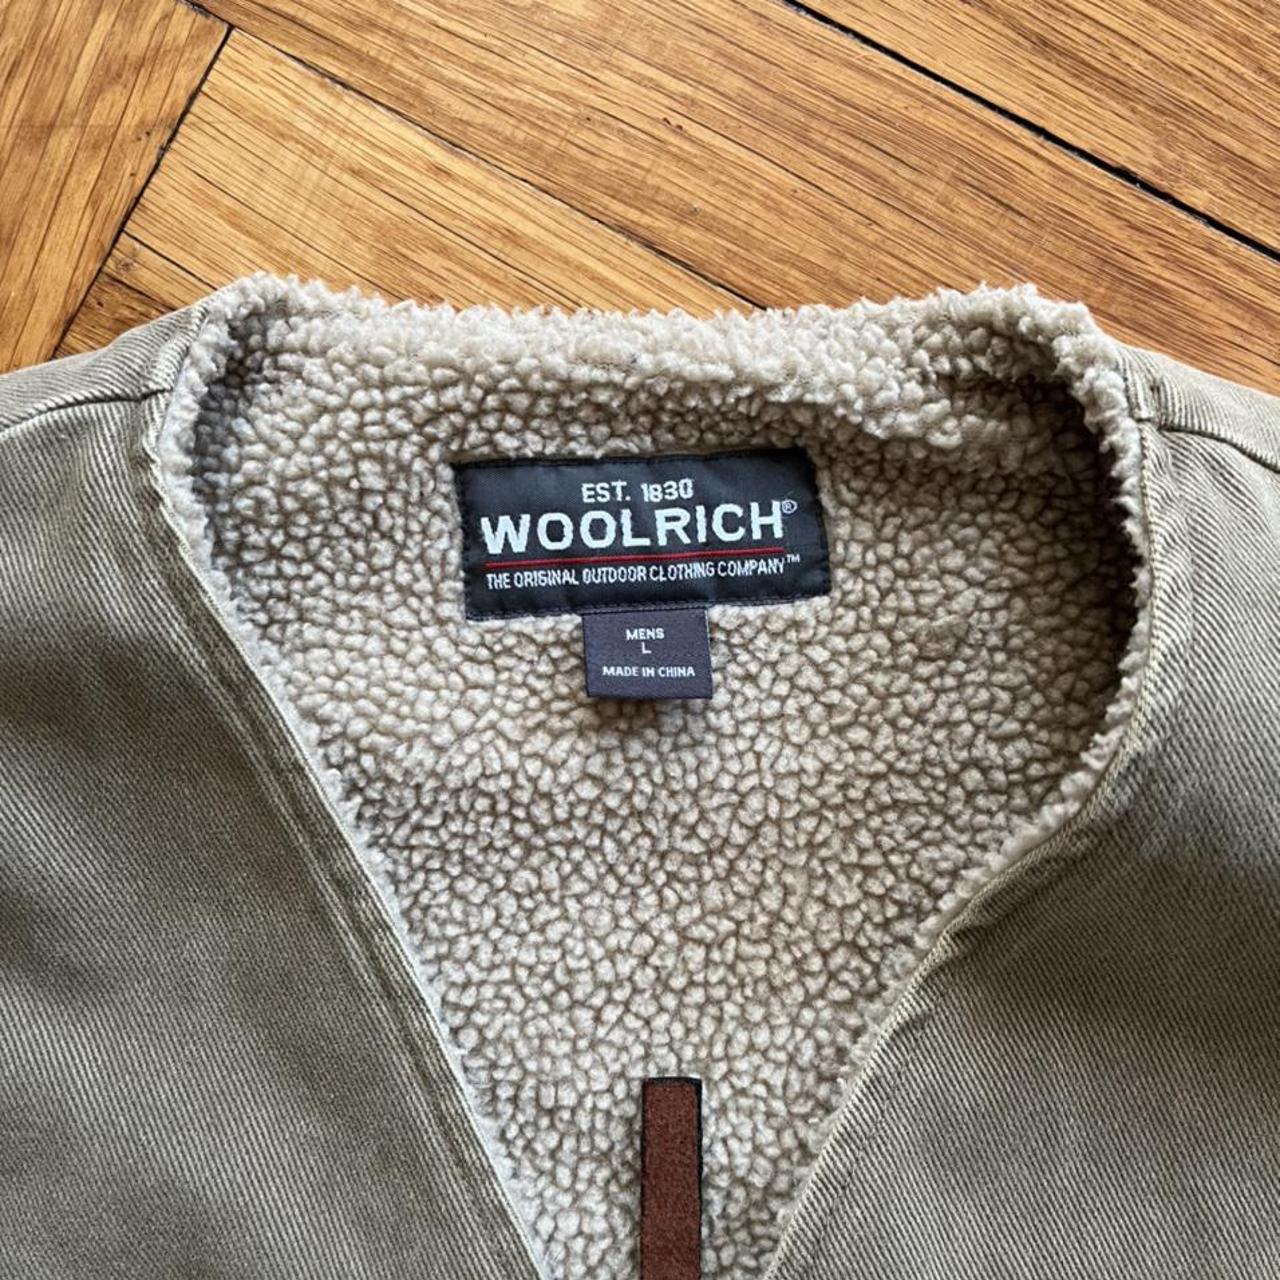 Vintage woolrich vest Pit to pit 25” Shoulder to... - Depop